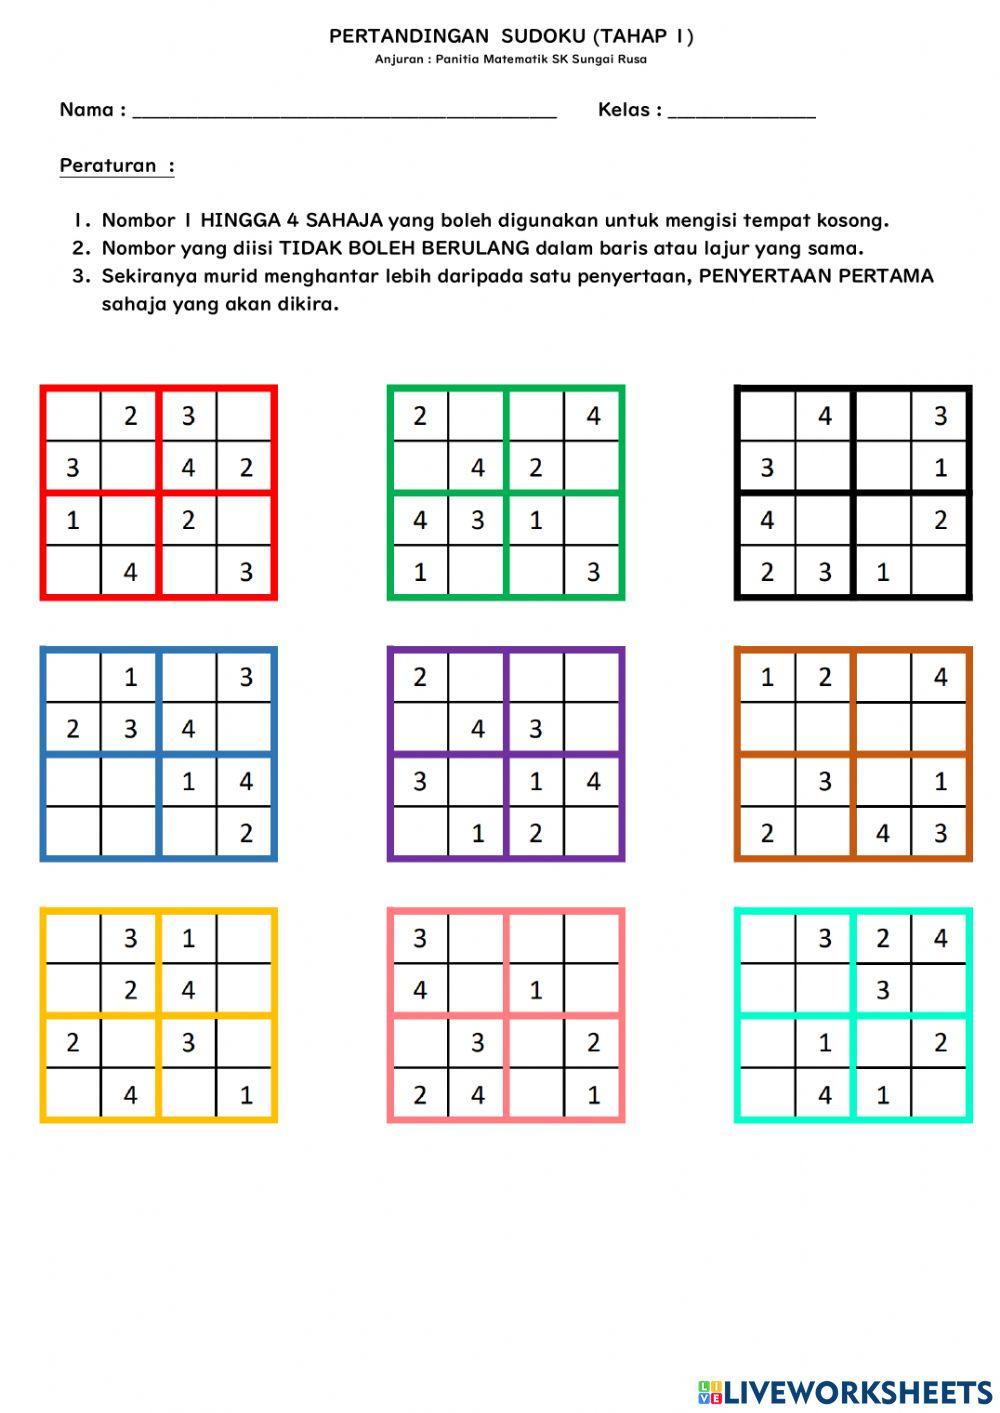 Pertandingan Sudoku Tahap 1